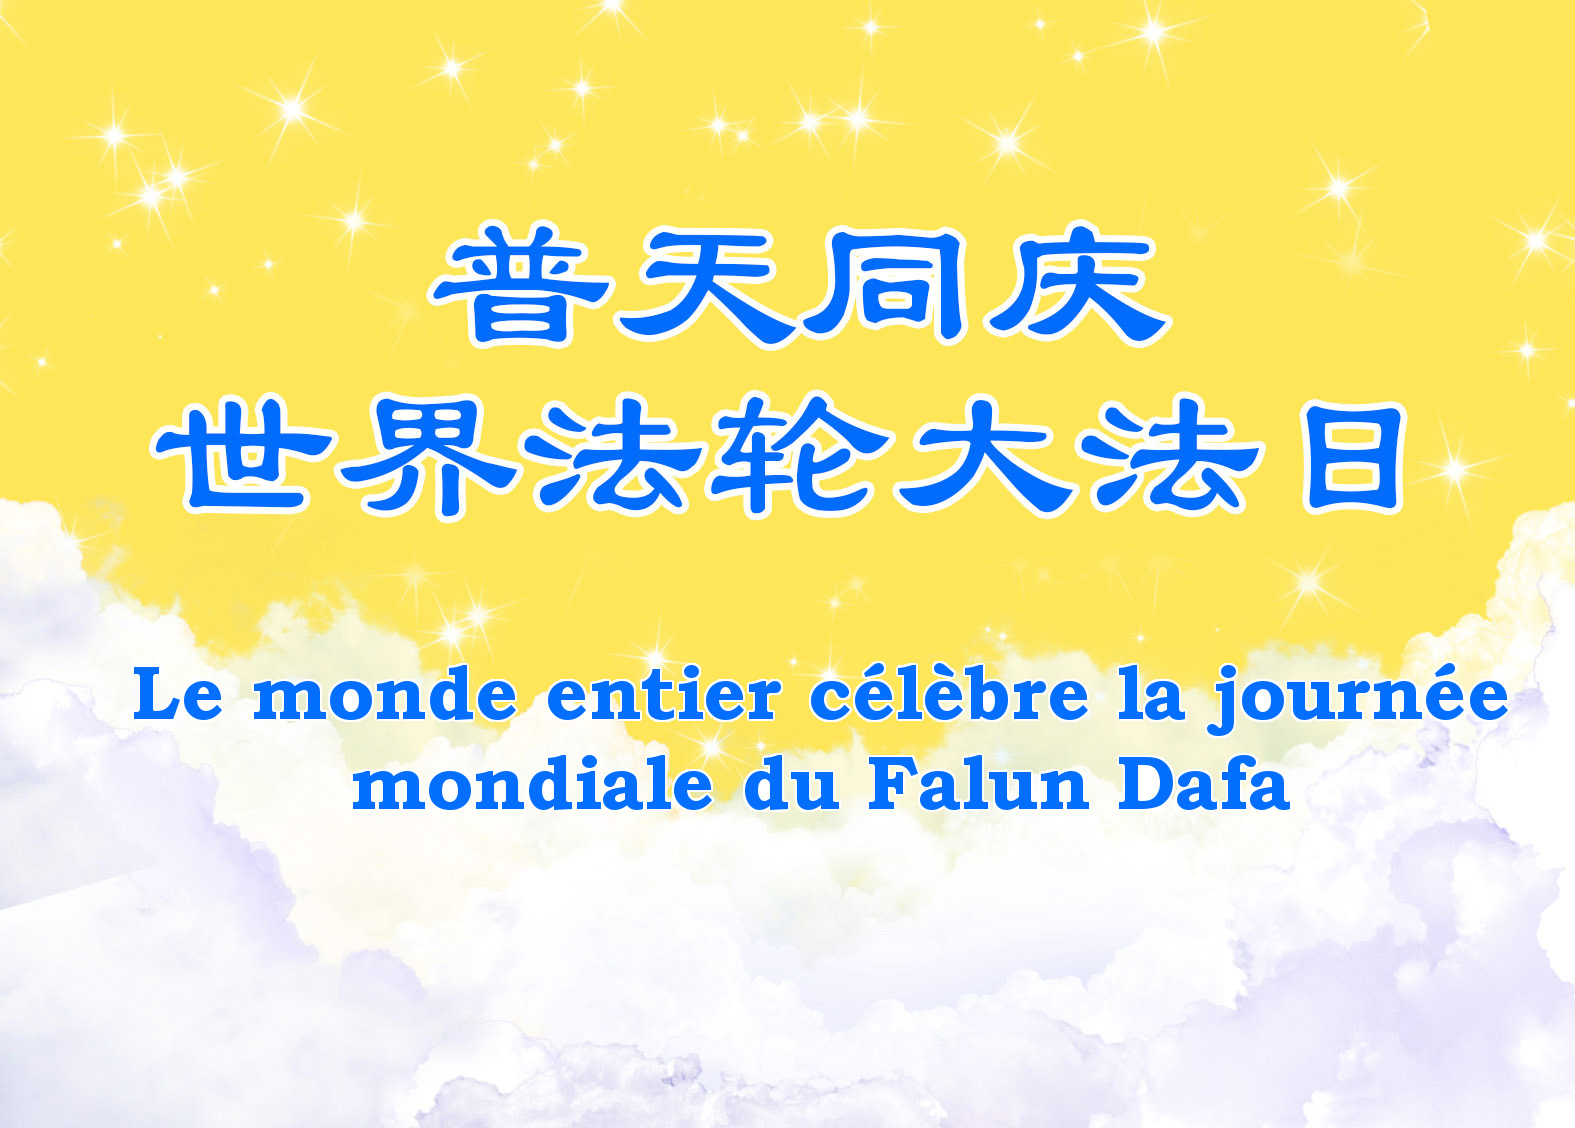 Image for article [Célébrer la Journée mondiale du Falun Dafa] Après avoir découvert la vérité sur le Falun Dafa, les prisonniers reçoivent des bénédictions